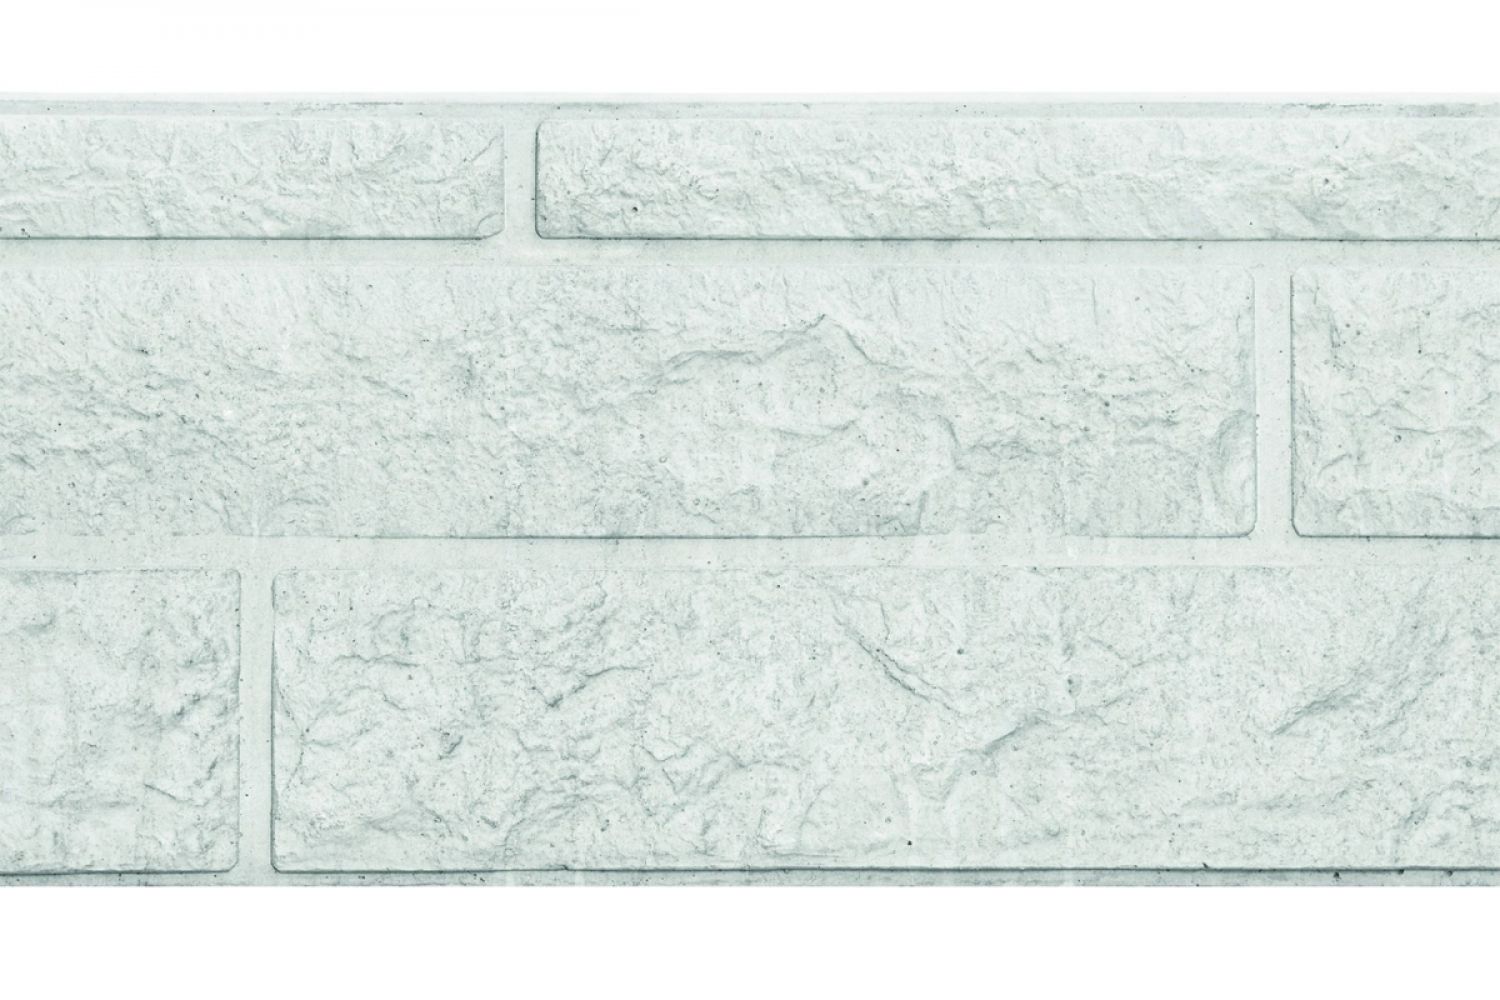 Betonnen onderplaat 2-zijdig rotsmotief wit/grijs 4,8x36x180 cm